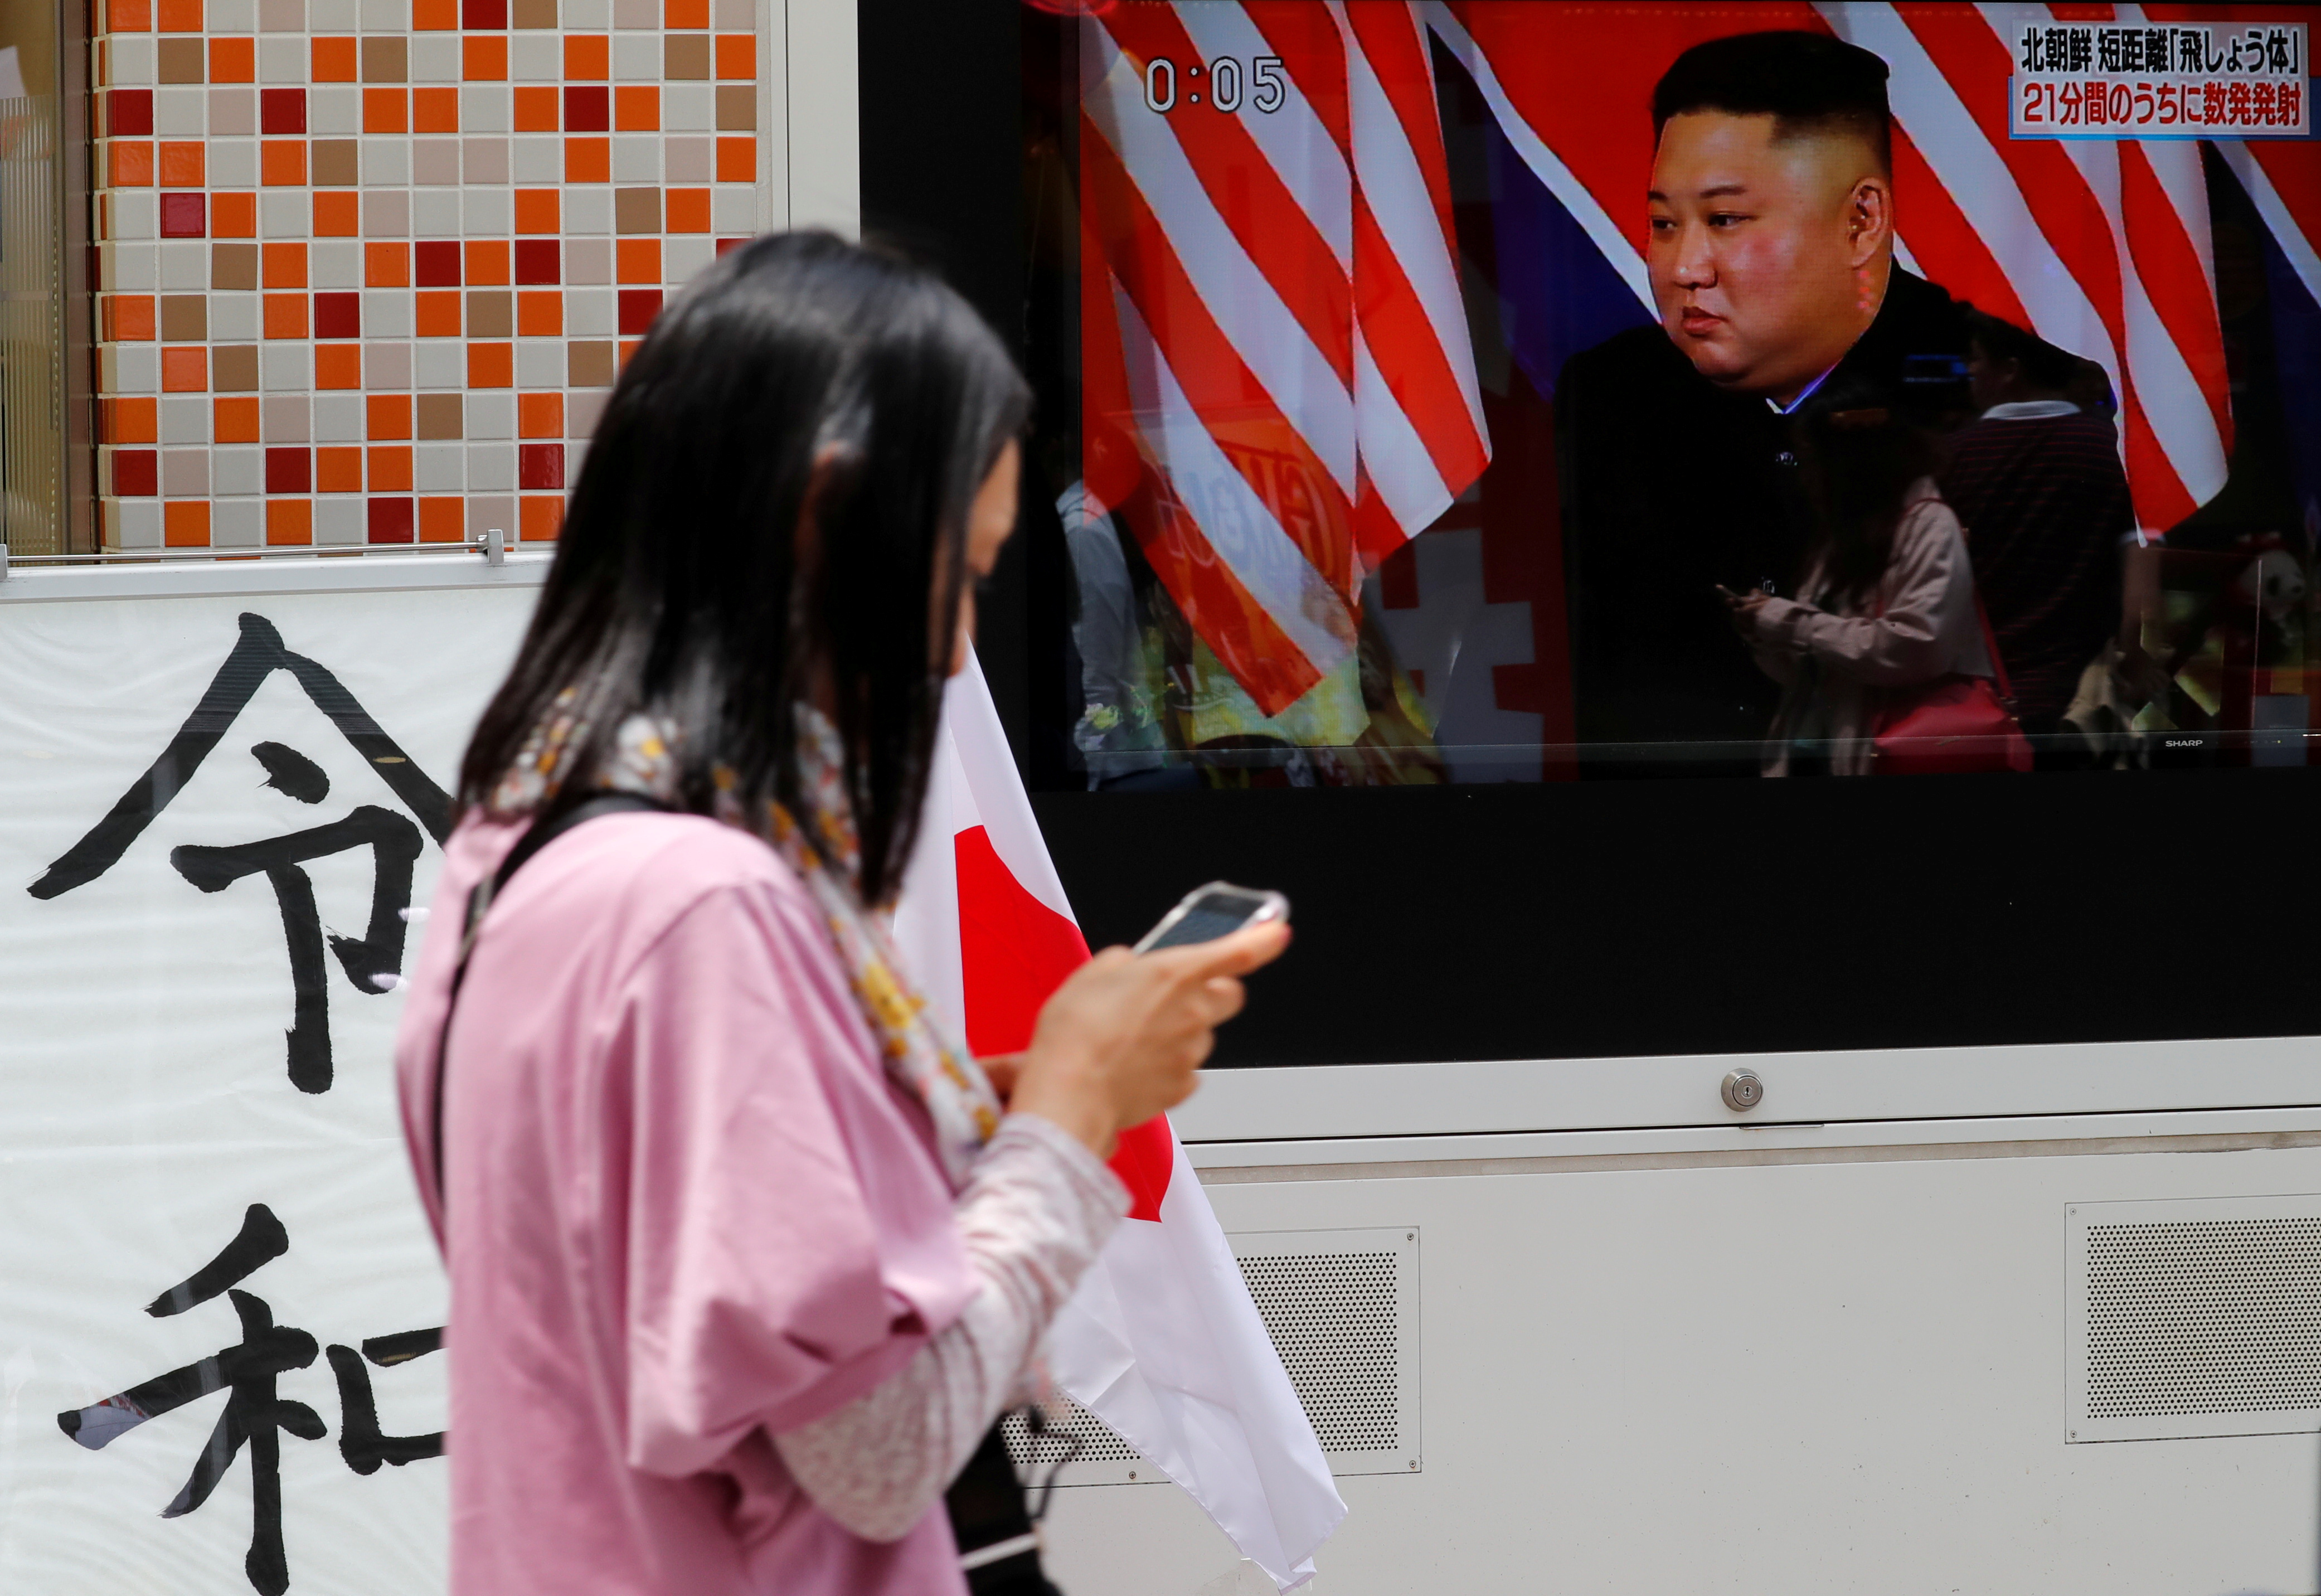 Corea del Norte “no siente ninguna necesidad” de dialogar con EEUU